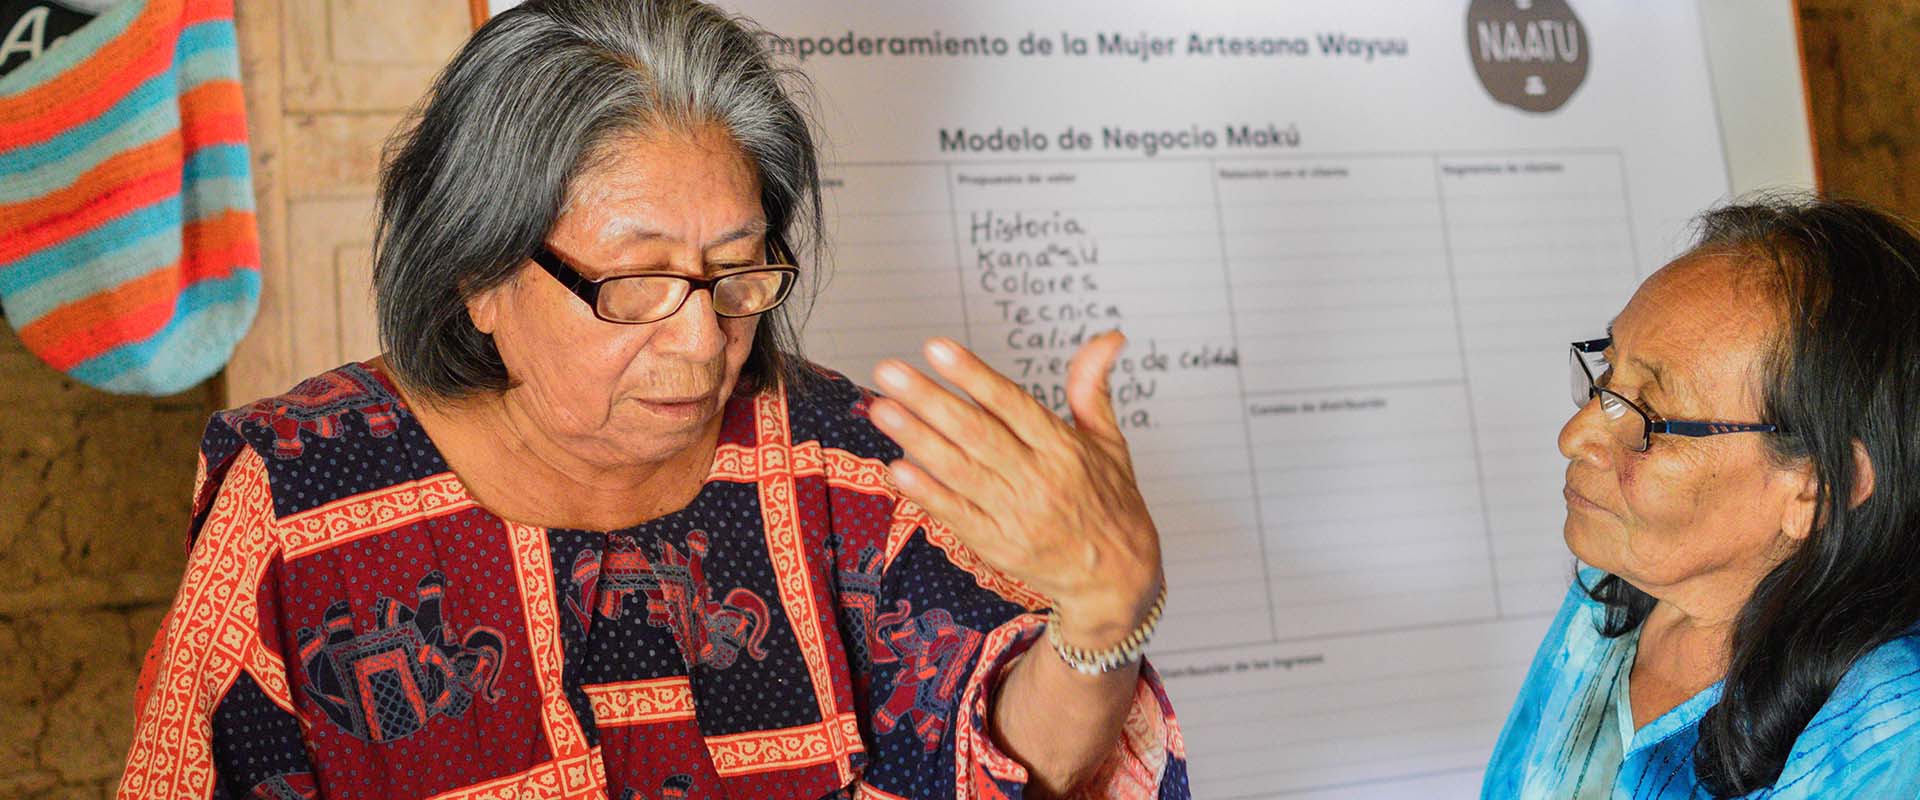 Causa Social Naatu: empoderando a mujeres indígenas artesanas